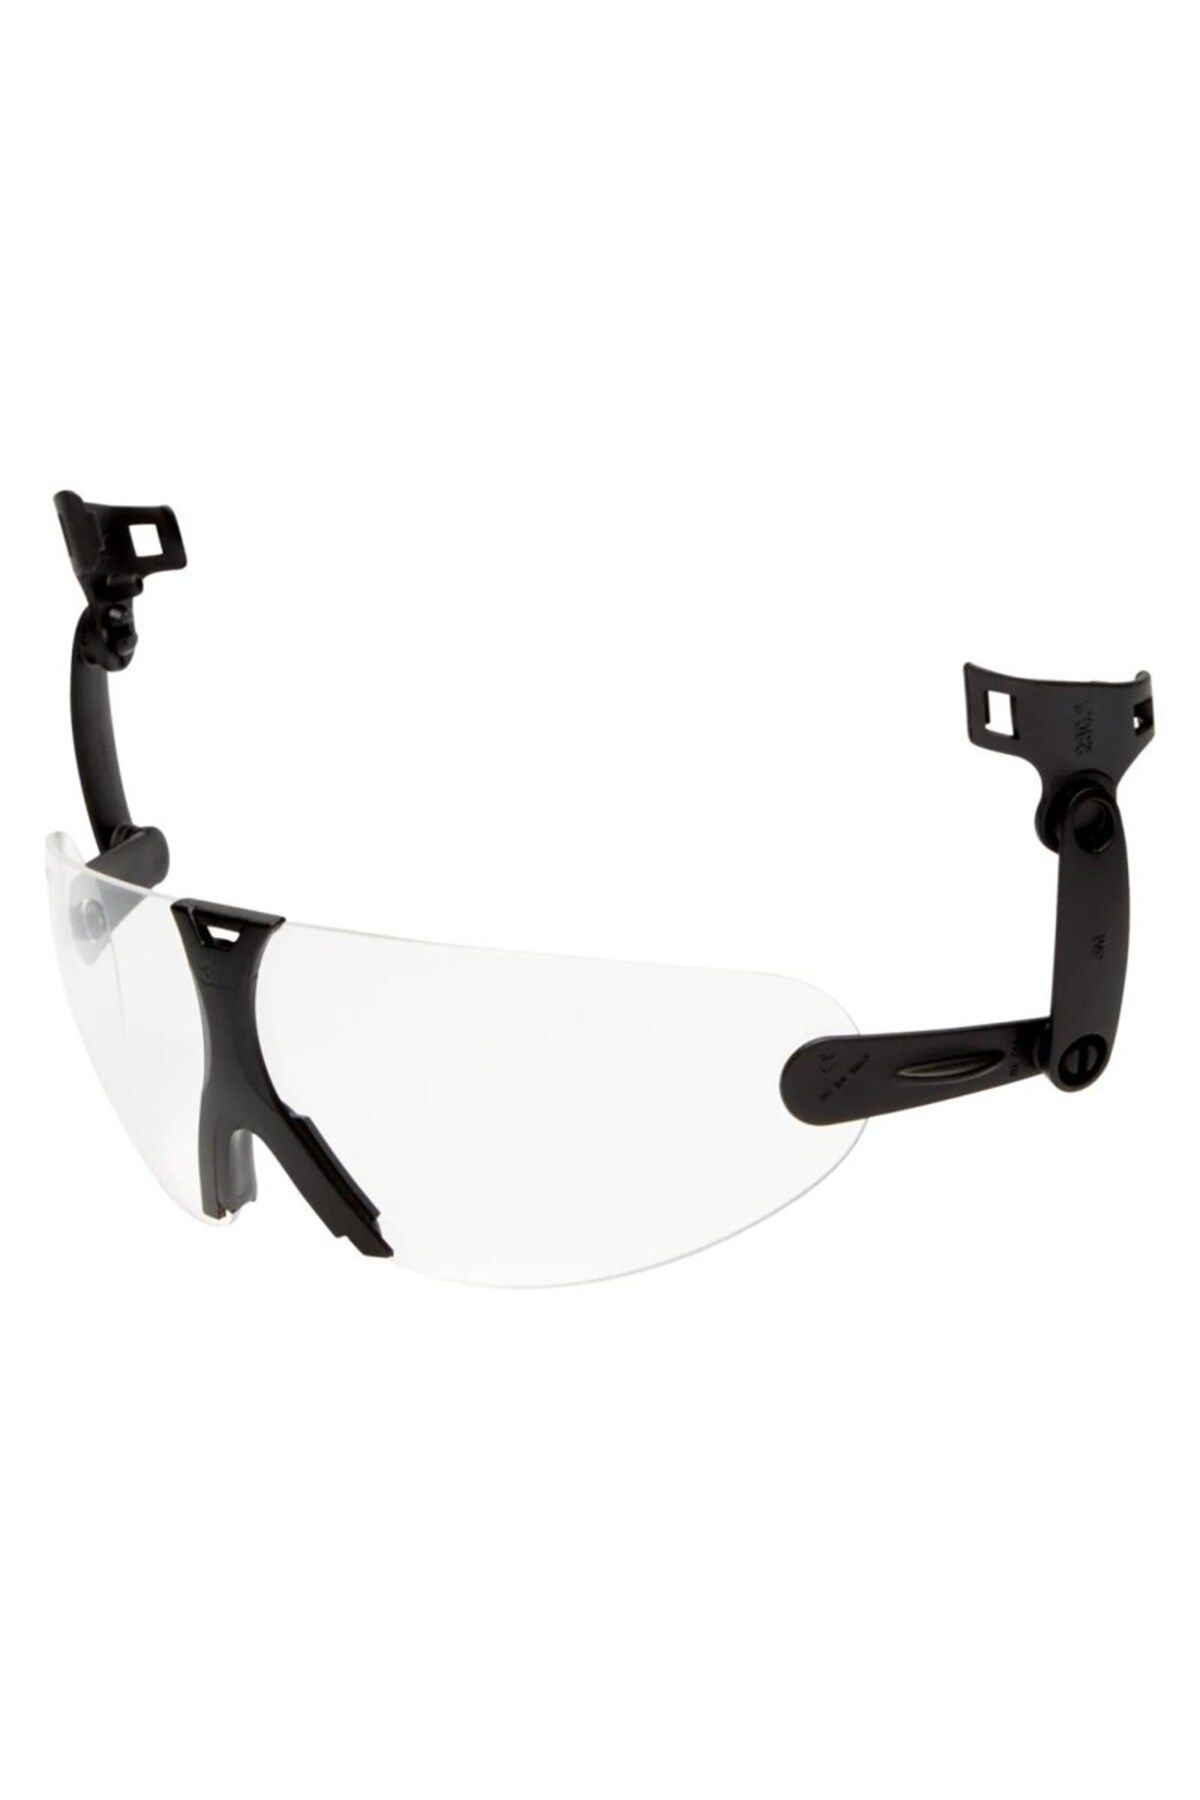 3M V9C Laboratuvar Gözlüğü Barete Monte Edilebilir Şeffaf Polikarbonat Koruyucu Gözlük